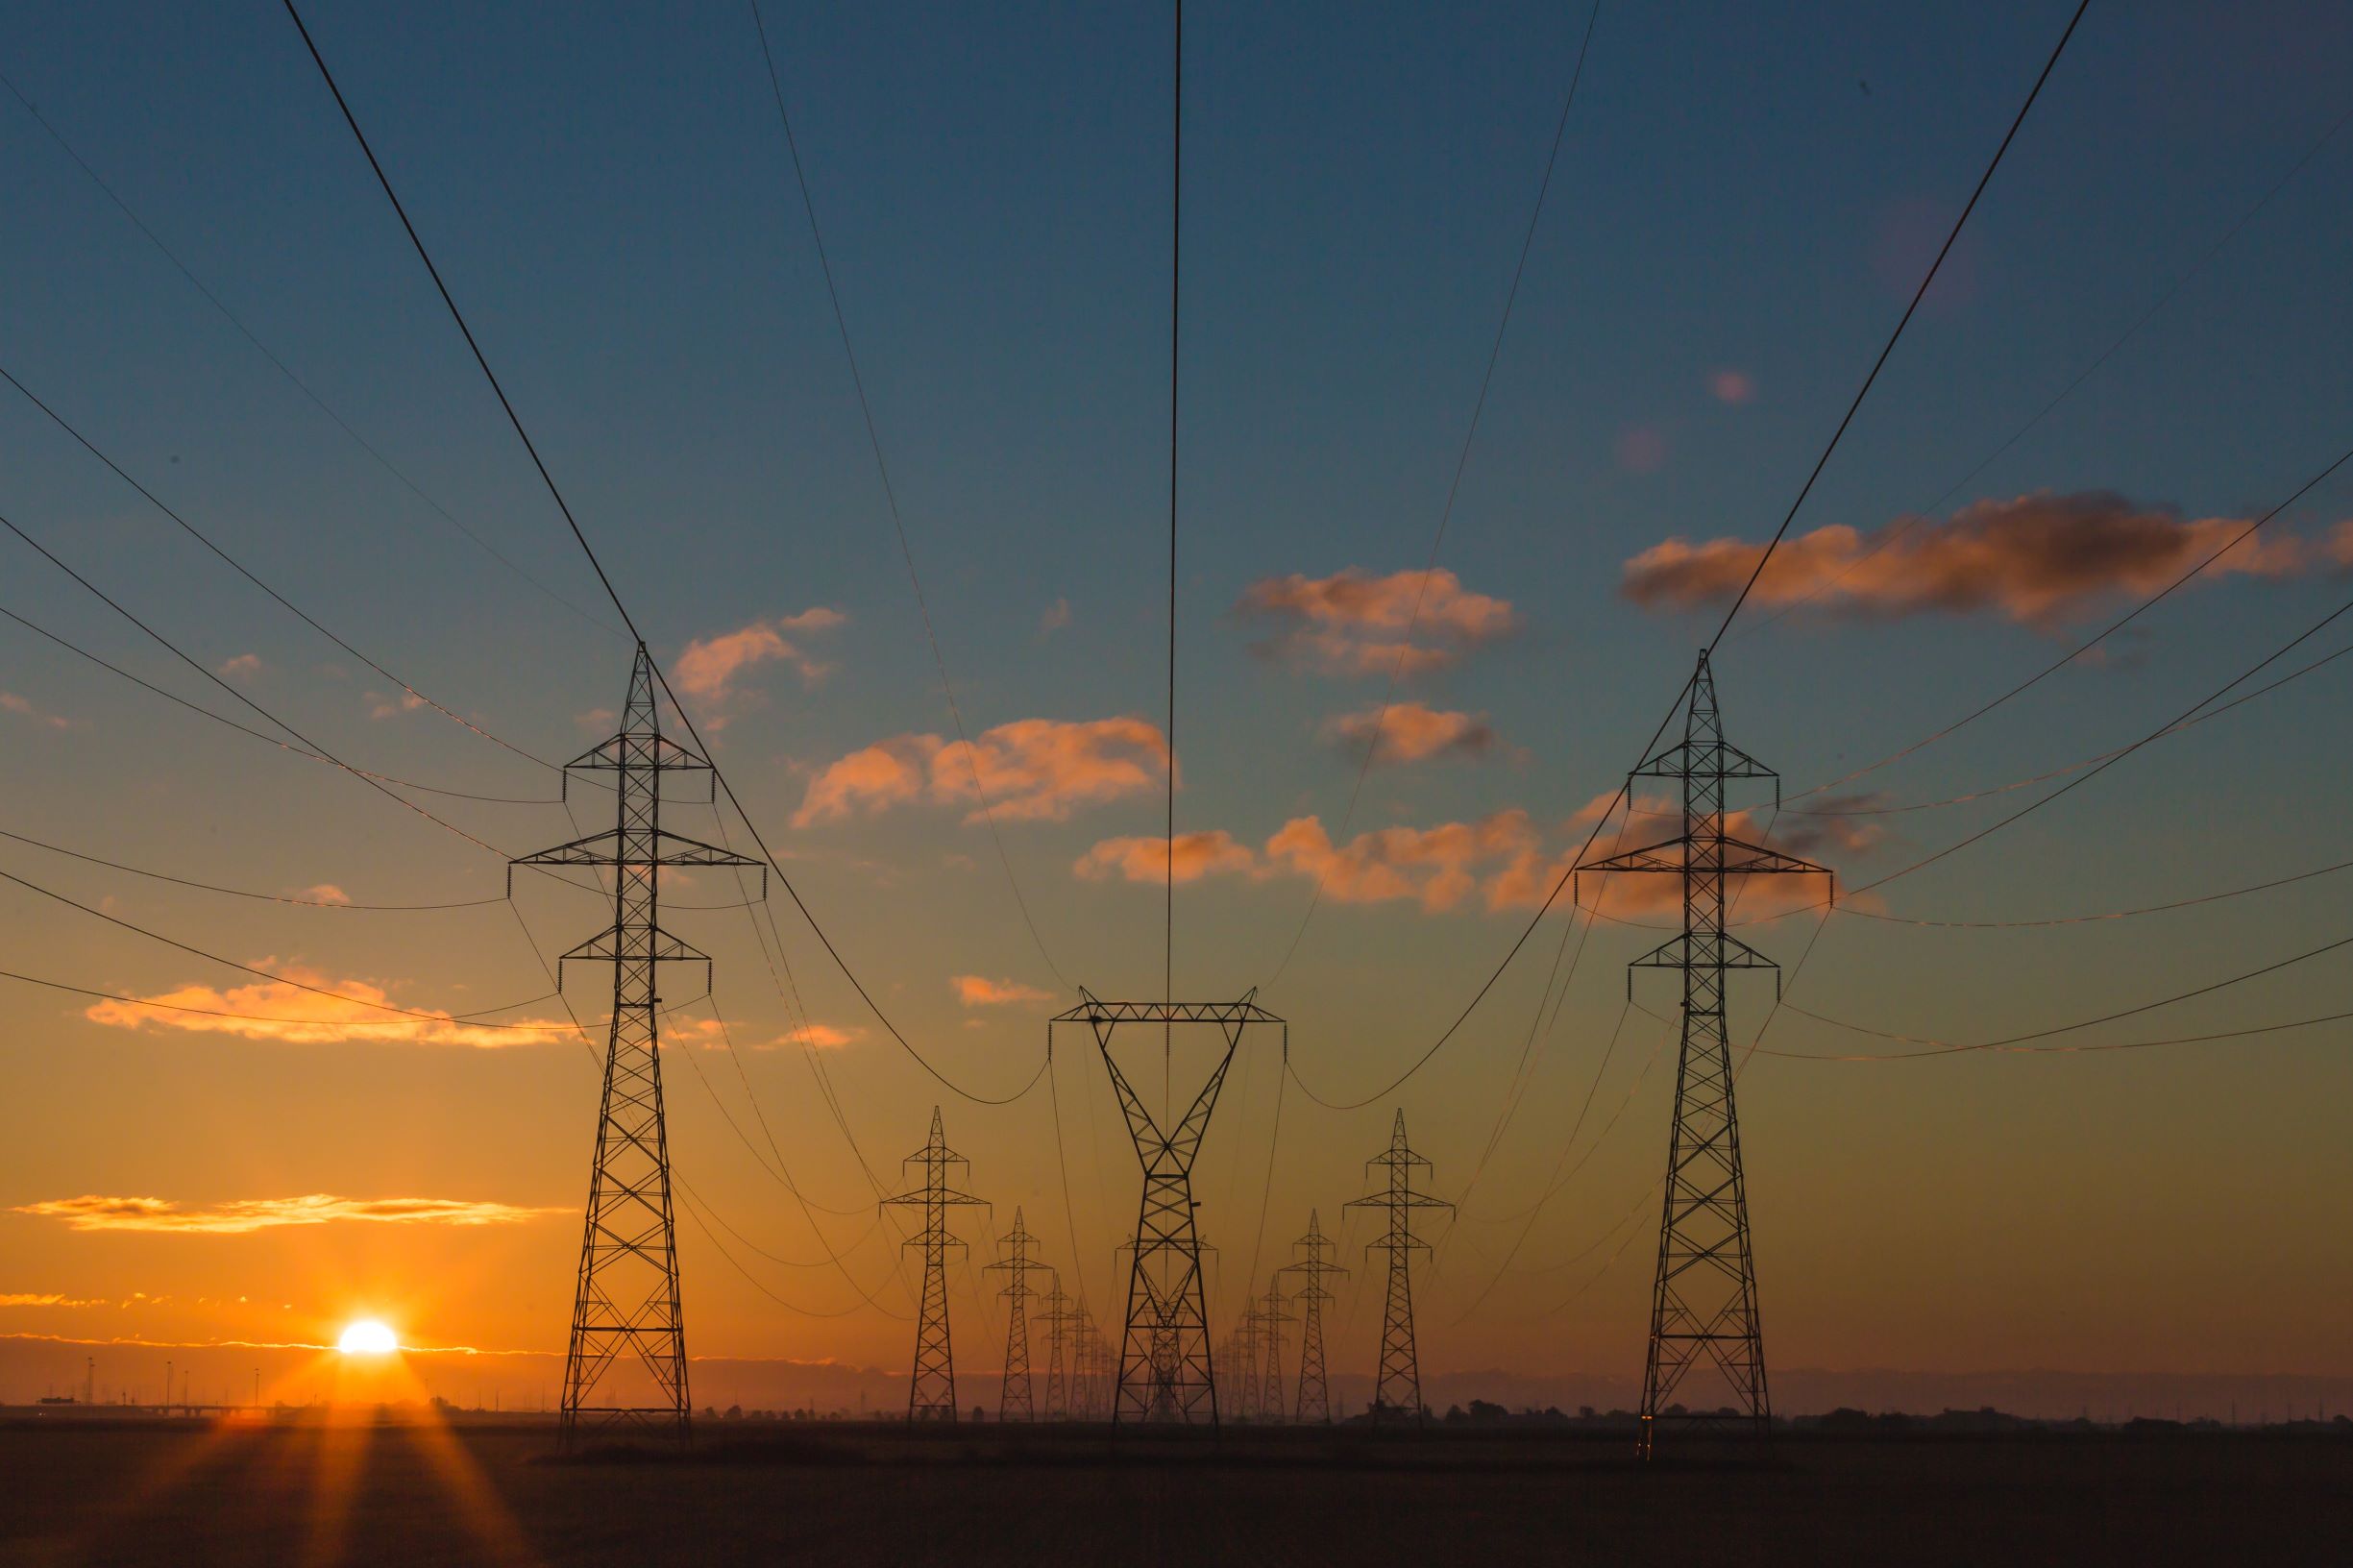 Рада скоротила строки змін у законодавстві про ринок електроенергії